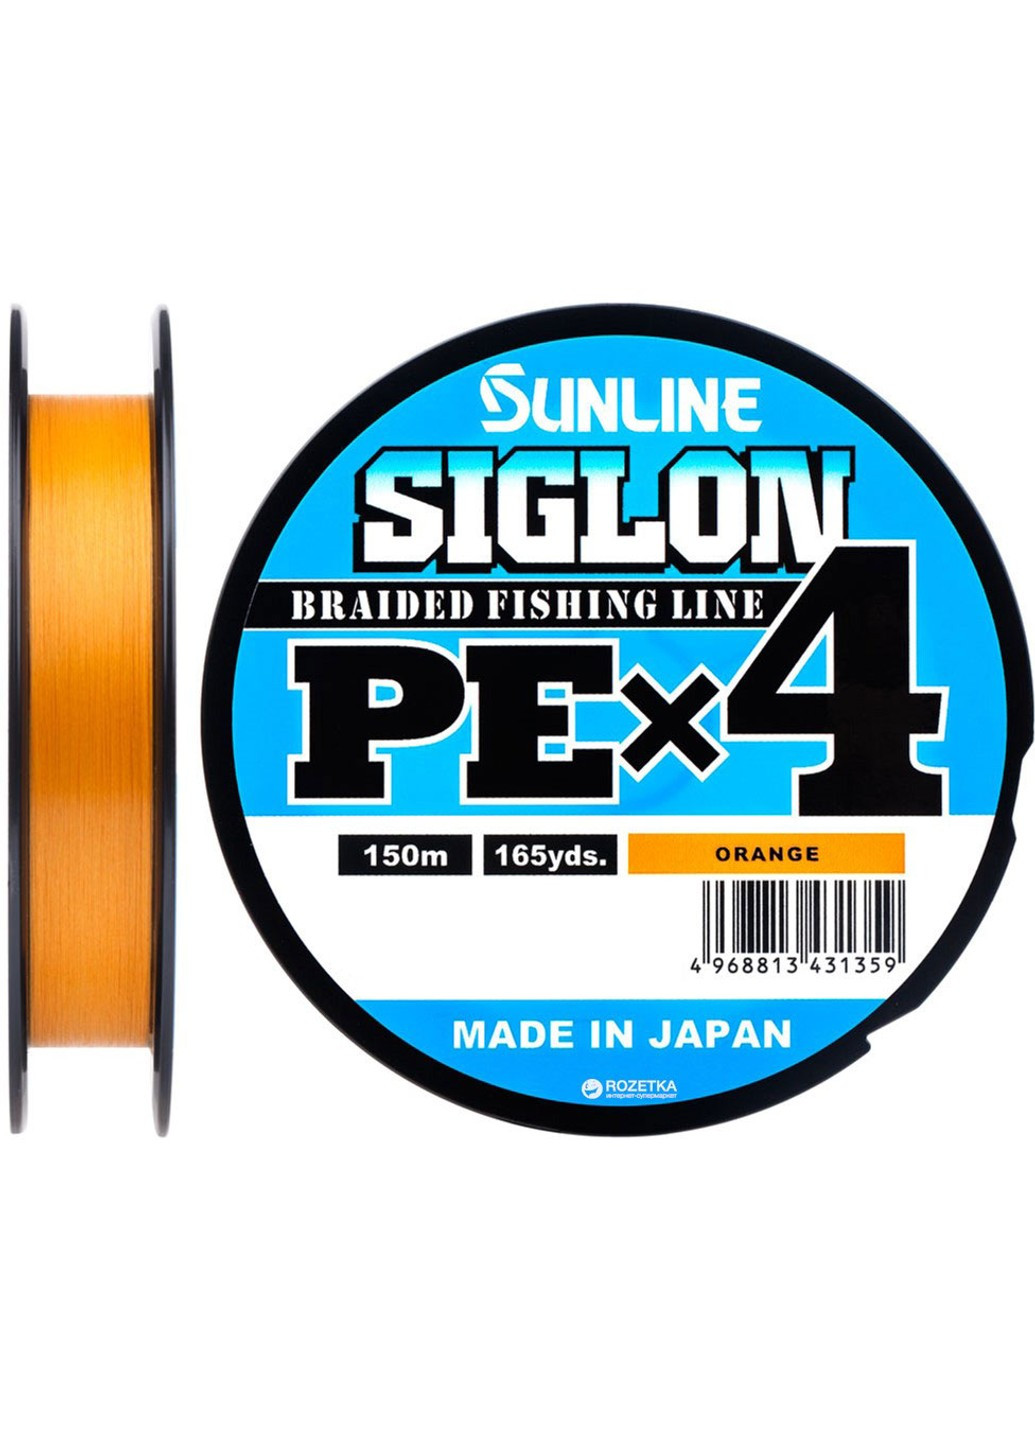 Шнур Siglon PE х4 150m (оранж.) #1.7/0.223mm 30lb/13.0kg (1658-09-35) Sunline (252468201)